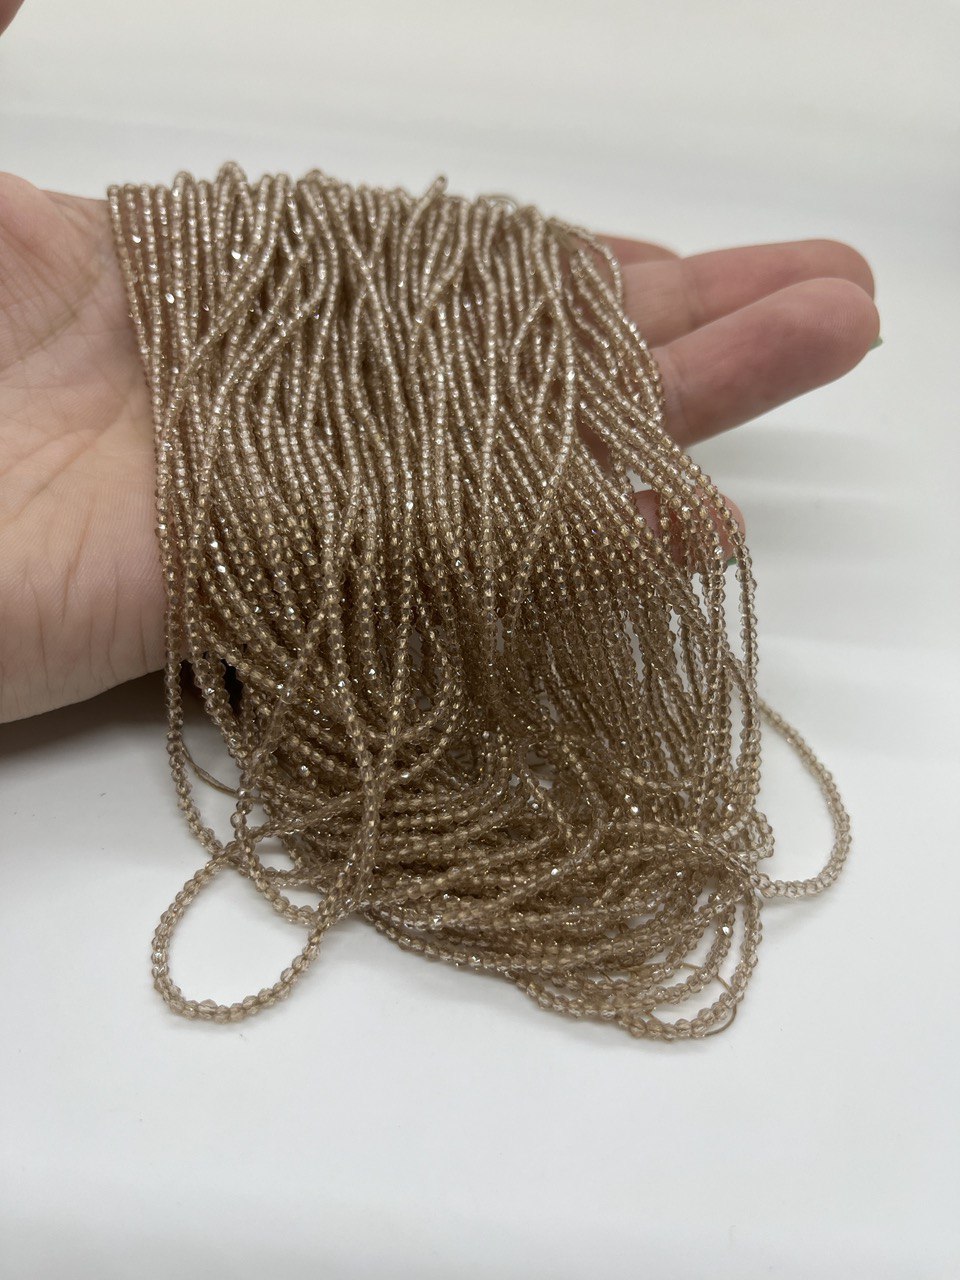 Бусины Циркон натуральный ювелирной огранки размер 3мм цвет бежевый